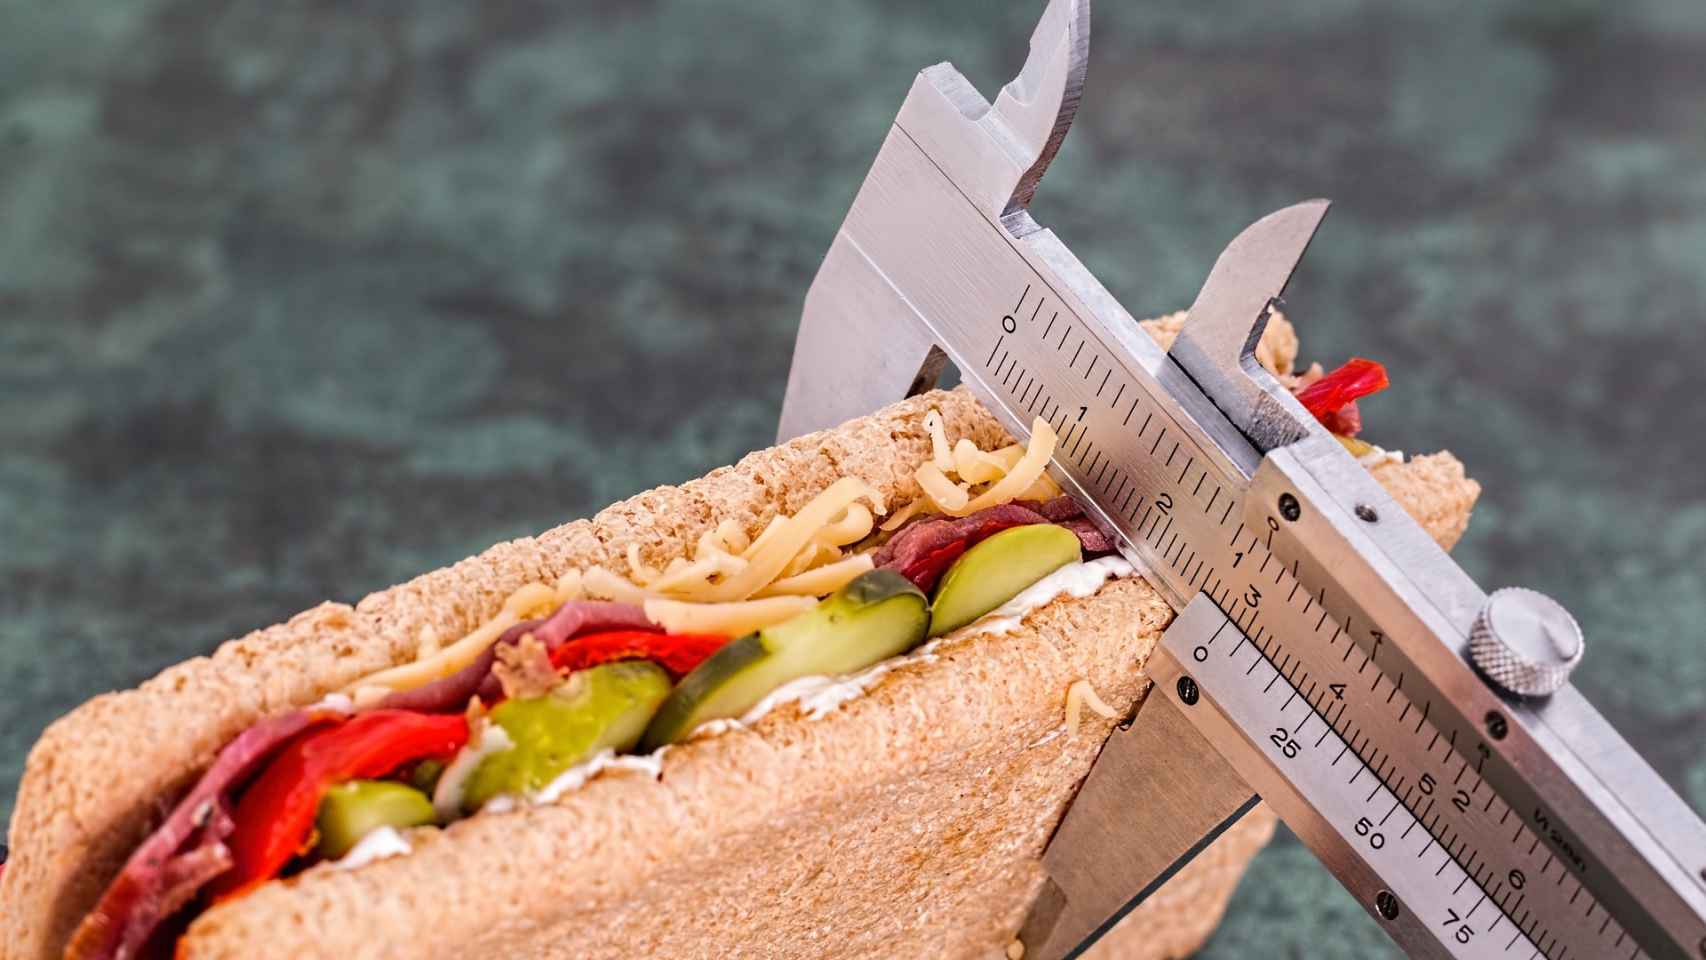 Un sandwich puede ser perfectamente insano pese a tener pocas calorías.